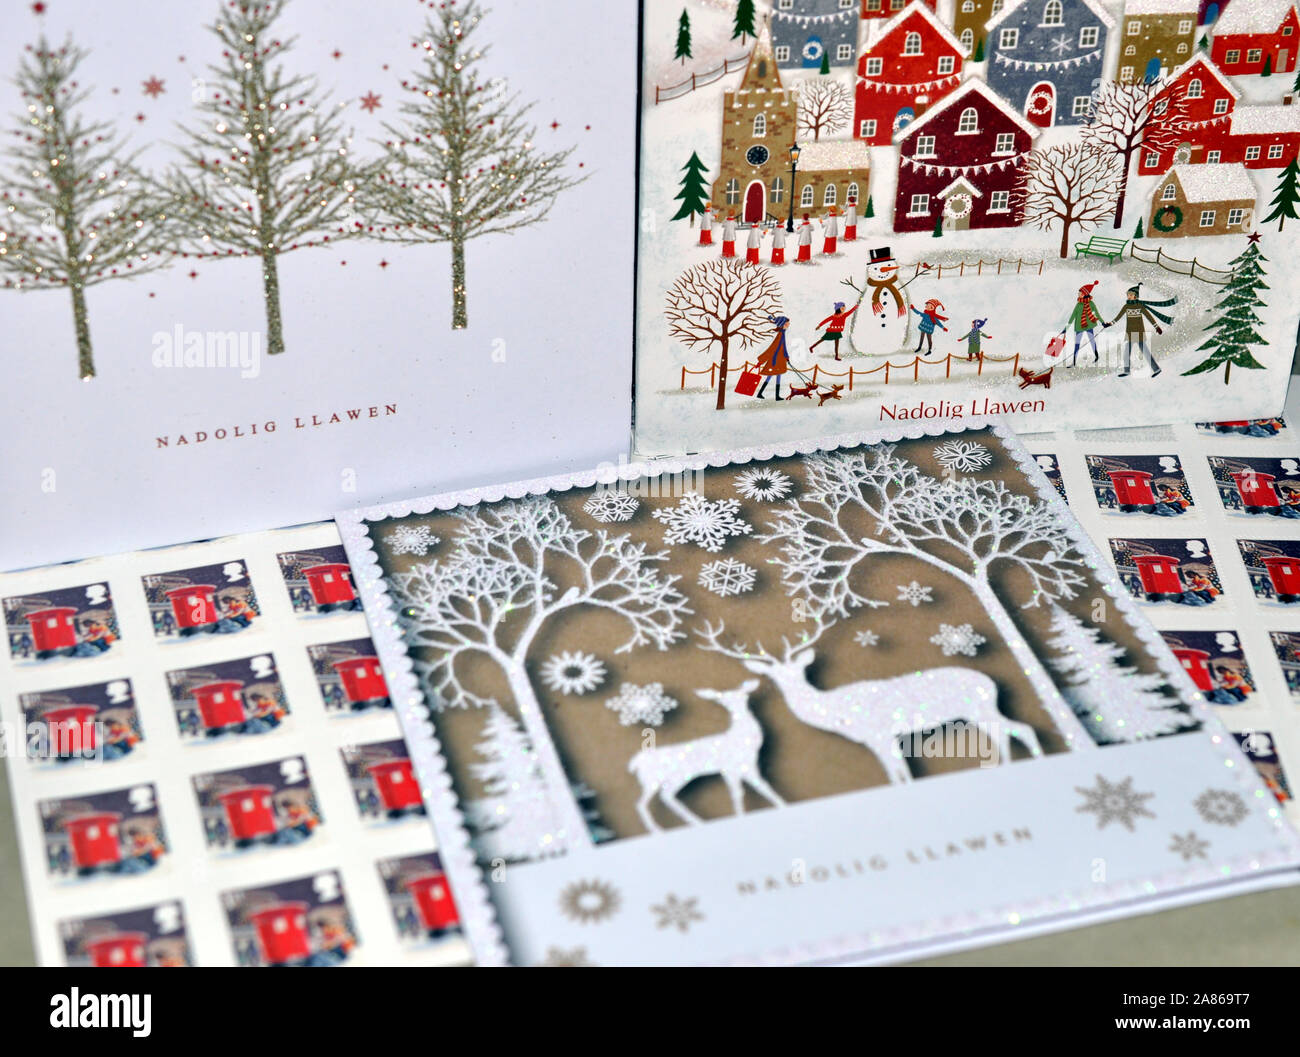 Nadolig Llawen, frohe Weihnachten, Walisische Sprache Weihnachtsgrüße Karte - besinnliche Weihnachten und Stockfoto